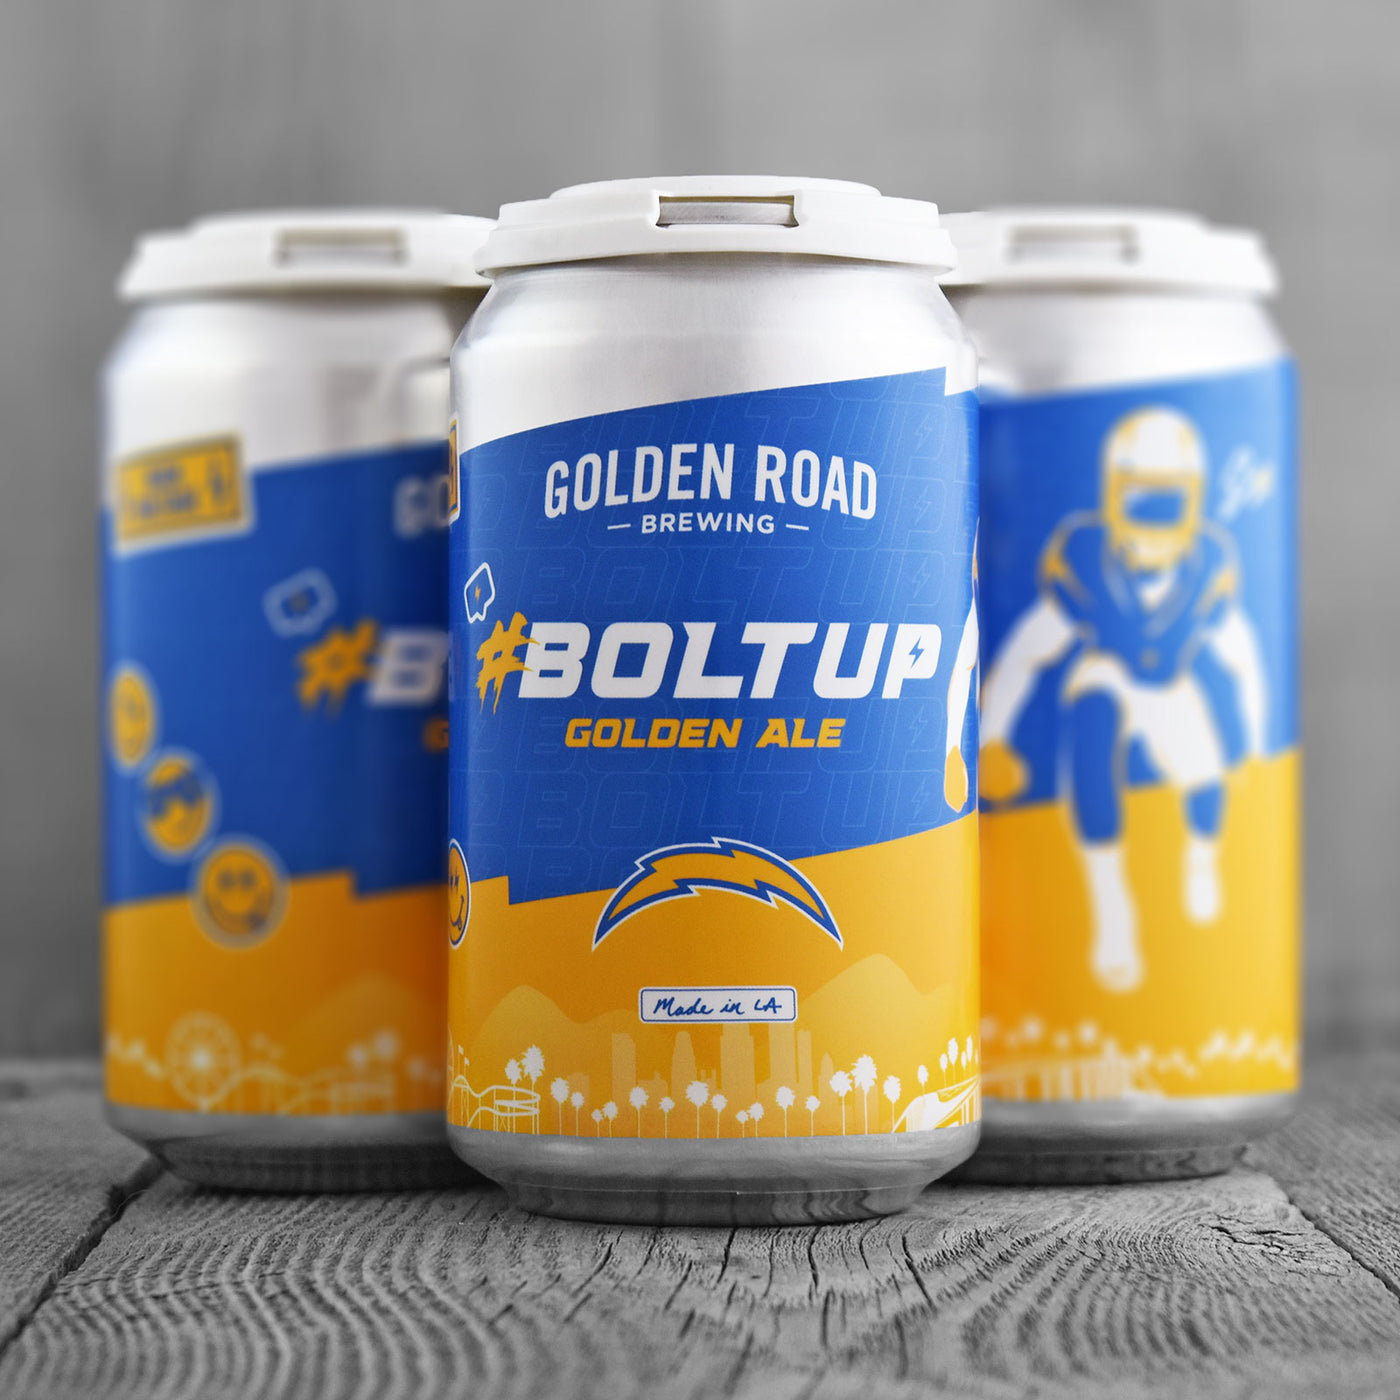 Golden Road #BoltUp